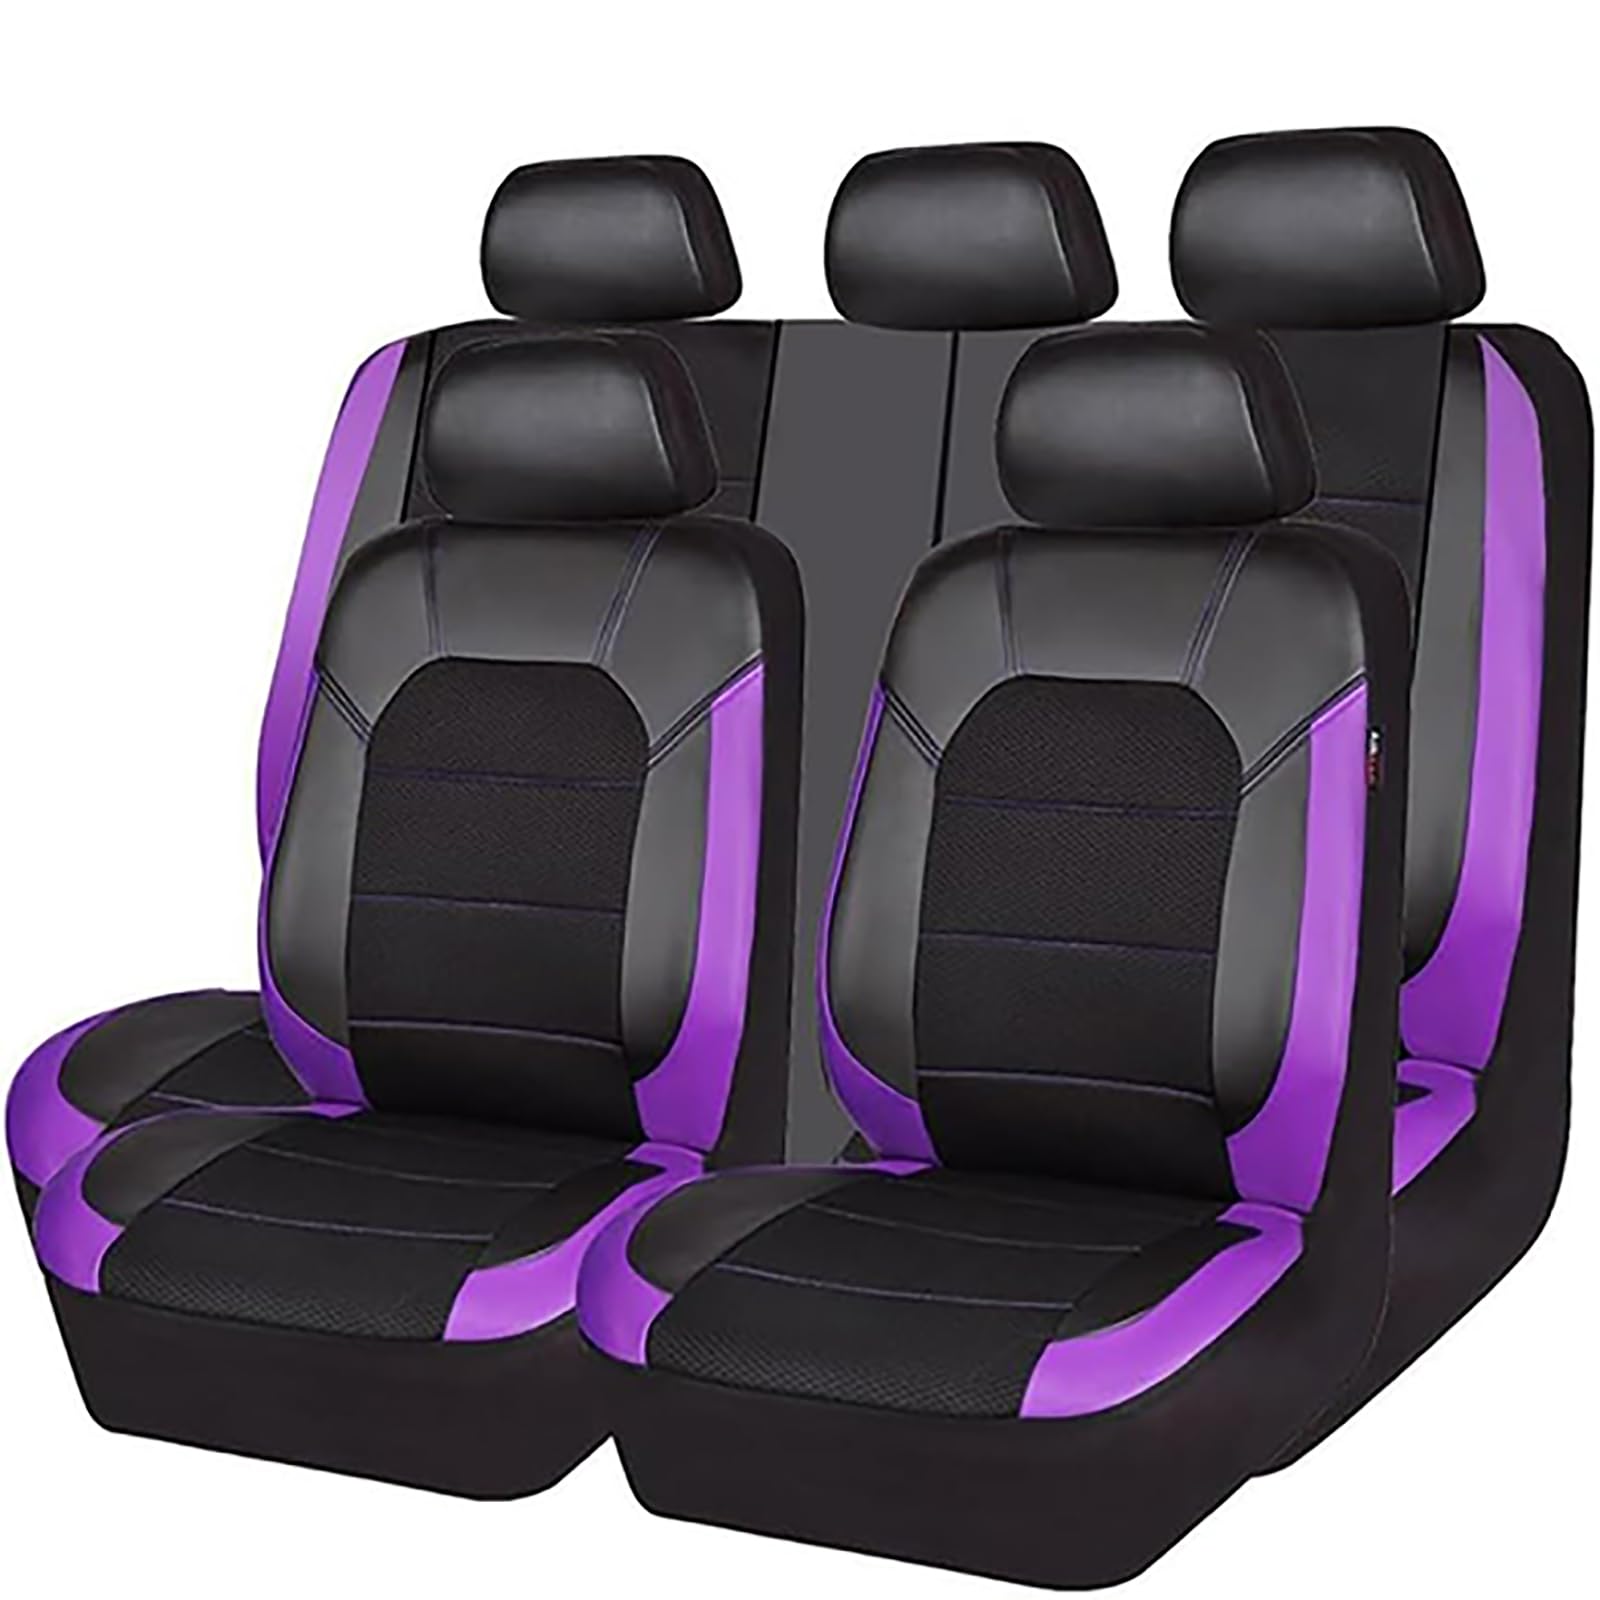 YZECEBNF Auto Sitzbezüge Set Für T-oyota Avensis 2011-2018, Universal Autositzbezüge Vorne RüCken Sitzschutz Sitzkissen Waschbarer Anti Rutsch Innenraum Zubehör,E/Purple von YZECEBNF